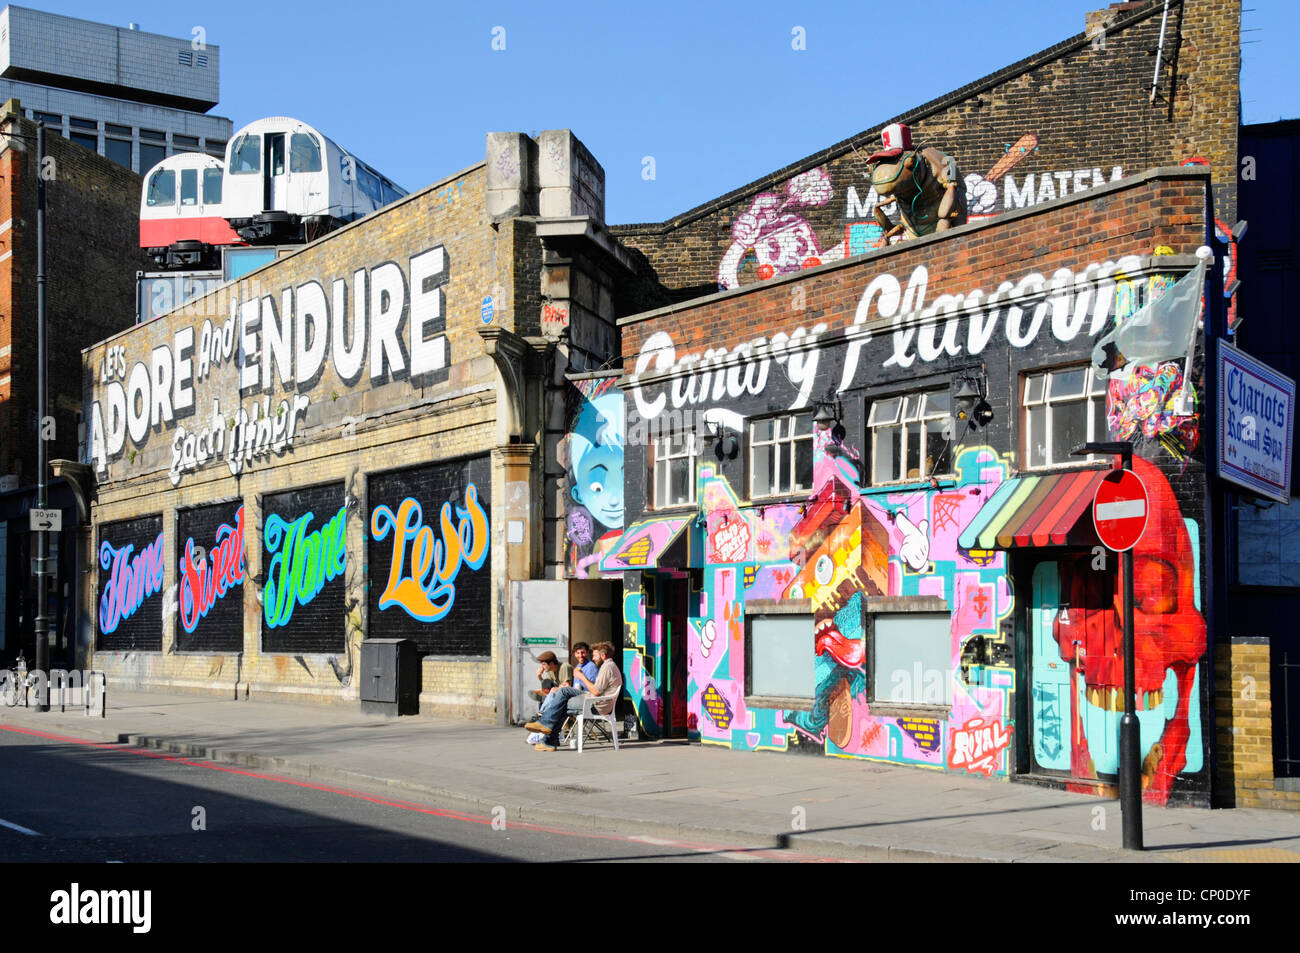 Voitures de train à tube recyclées utilisées comme studios d'artistes perchés au-dessus de vieux murs de viaduc de chemin de fer en dessous des graffitis arty dans Shoreditch East London Angleterre Royaume-Uni Banque D'Images